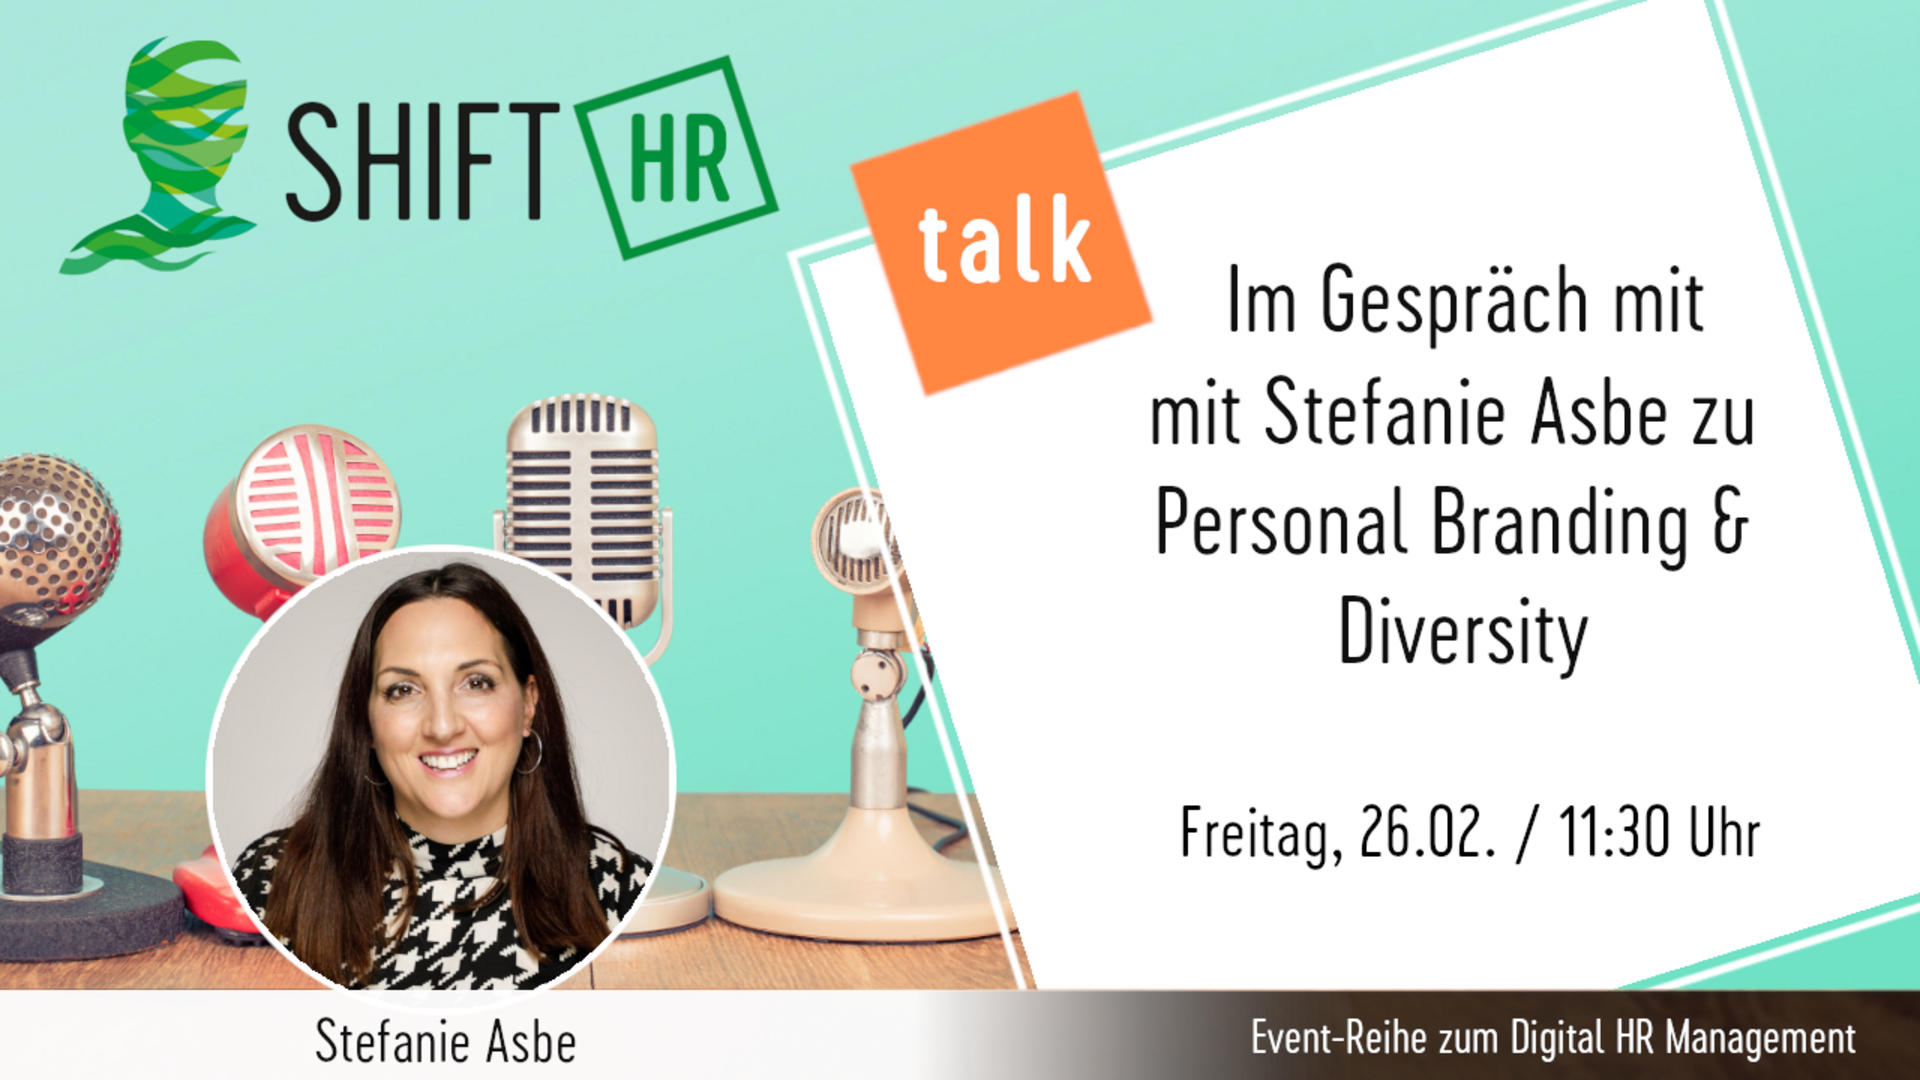 Im Gespräch mit Stefanie Asbe zu Personal Branding & Diversity